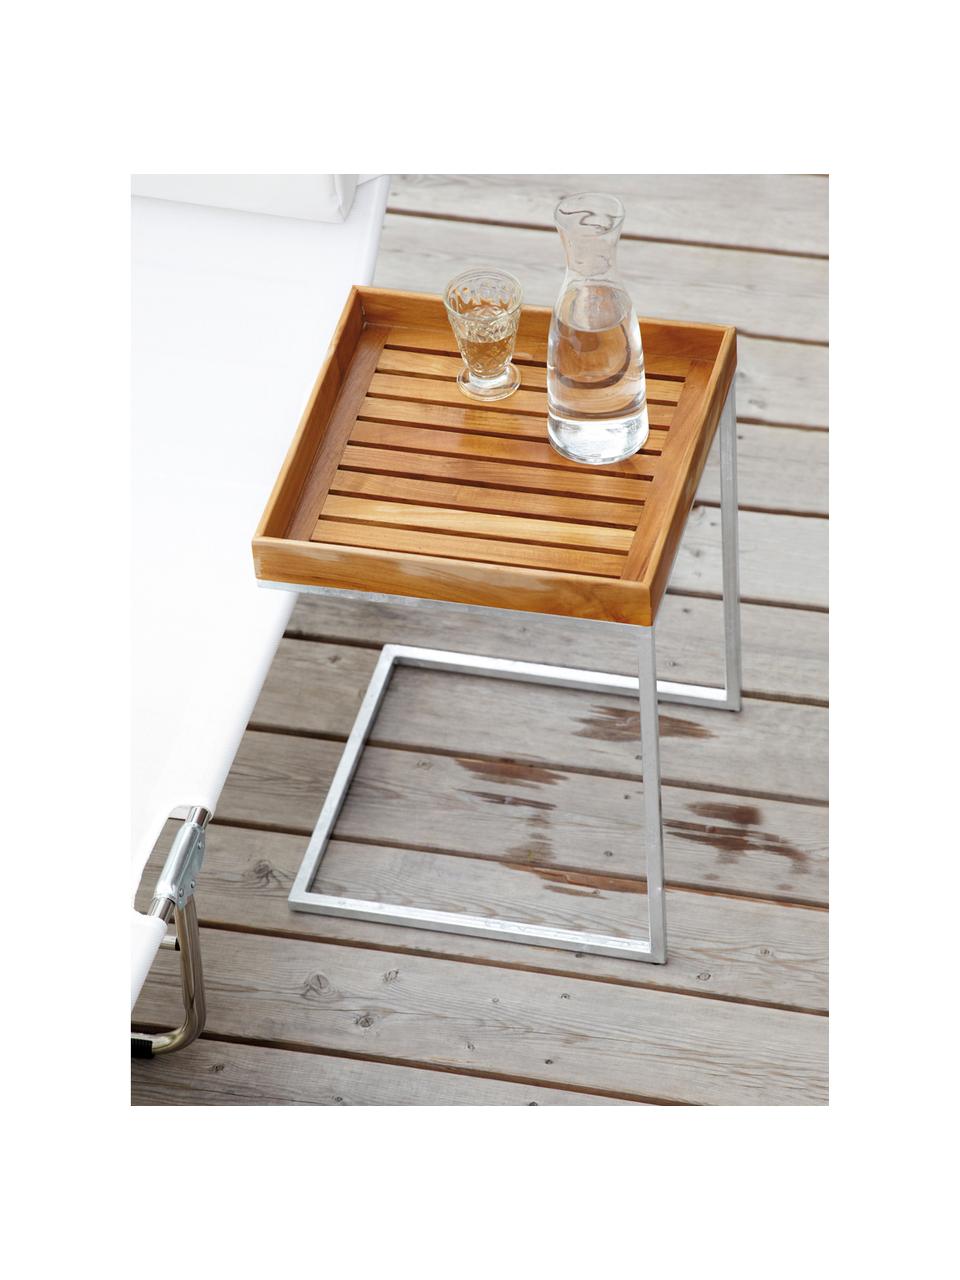 Tavolino-vassoio da balcone in legno di teak Pizzo, Struttura: acciaio inossidabile luci, Legno di teak, acciaio inossidabile, Larg. 40 x Alt. 52 cm